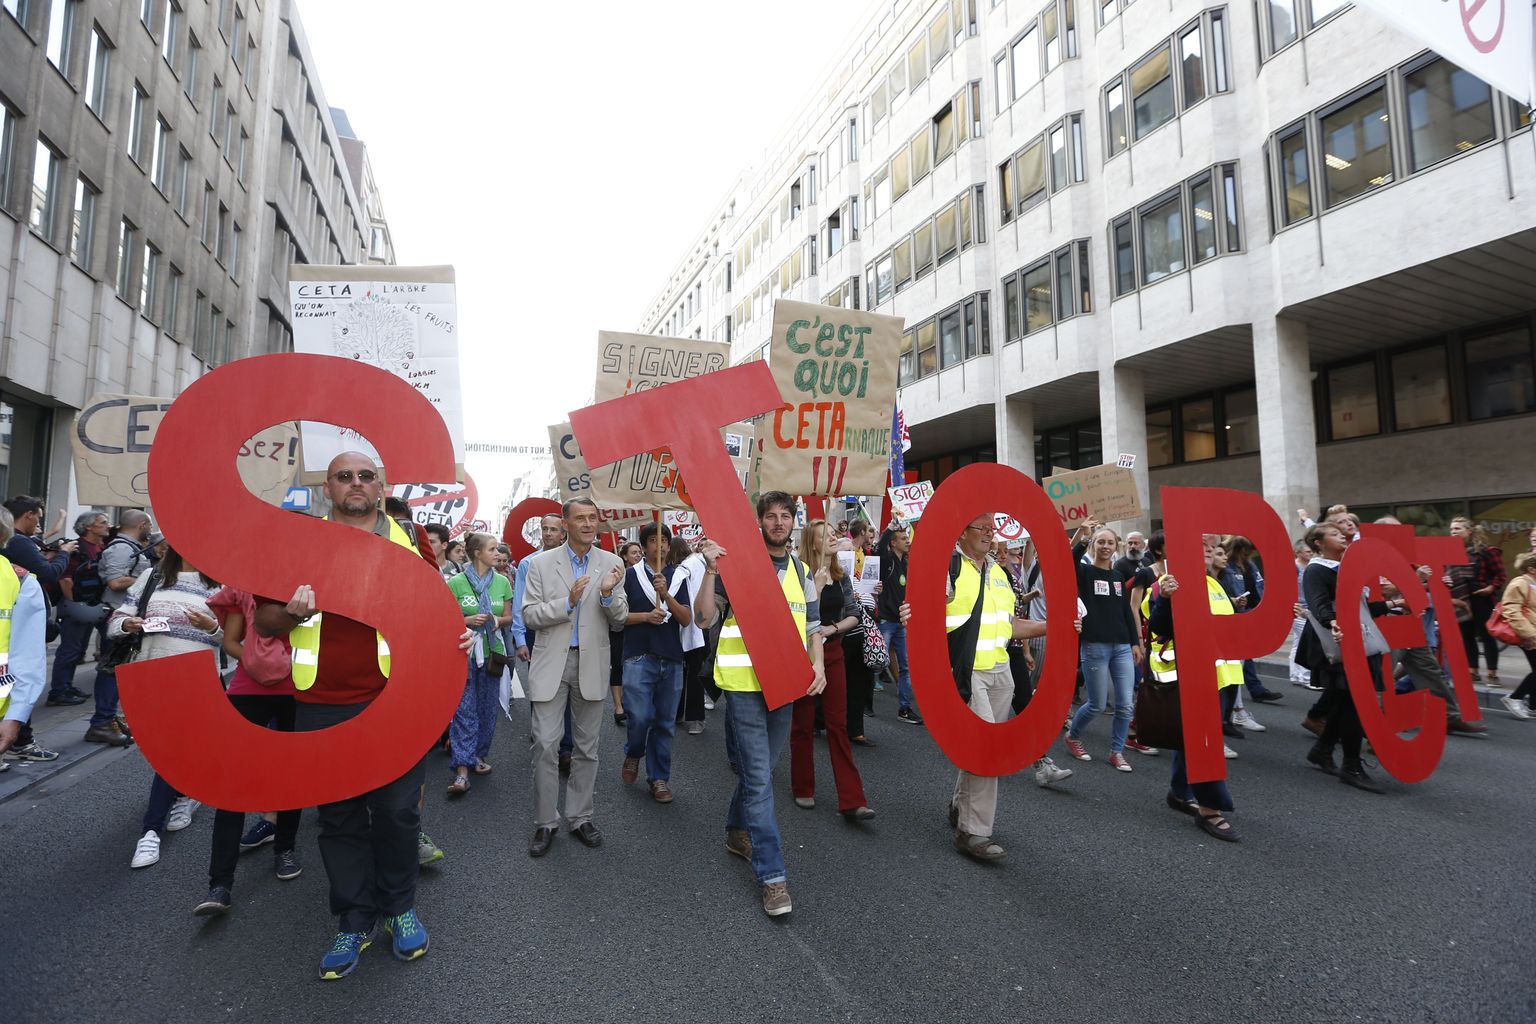 Sel teisipäeval protesteeris Brüsselis Euroopa Liidu institutsioonide juures umbes 9000 inimest vabakaubandusleppe vastu, kuna see kahjustaks väidetavalt Euroopa tööstusi ja sotsiaalseid garantiisid.